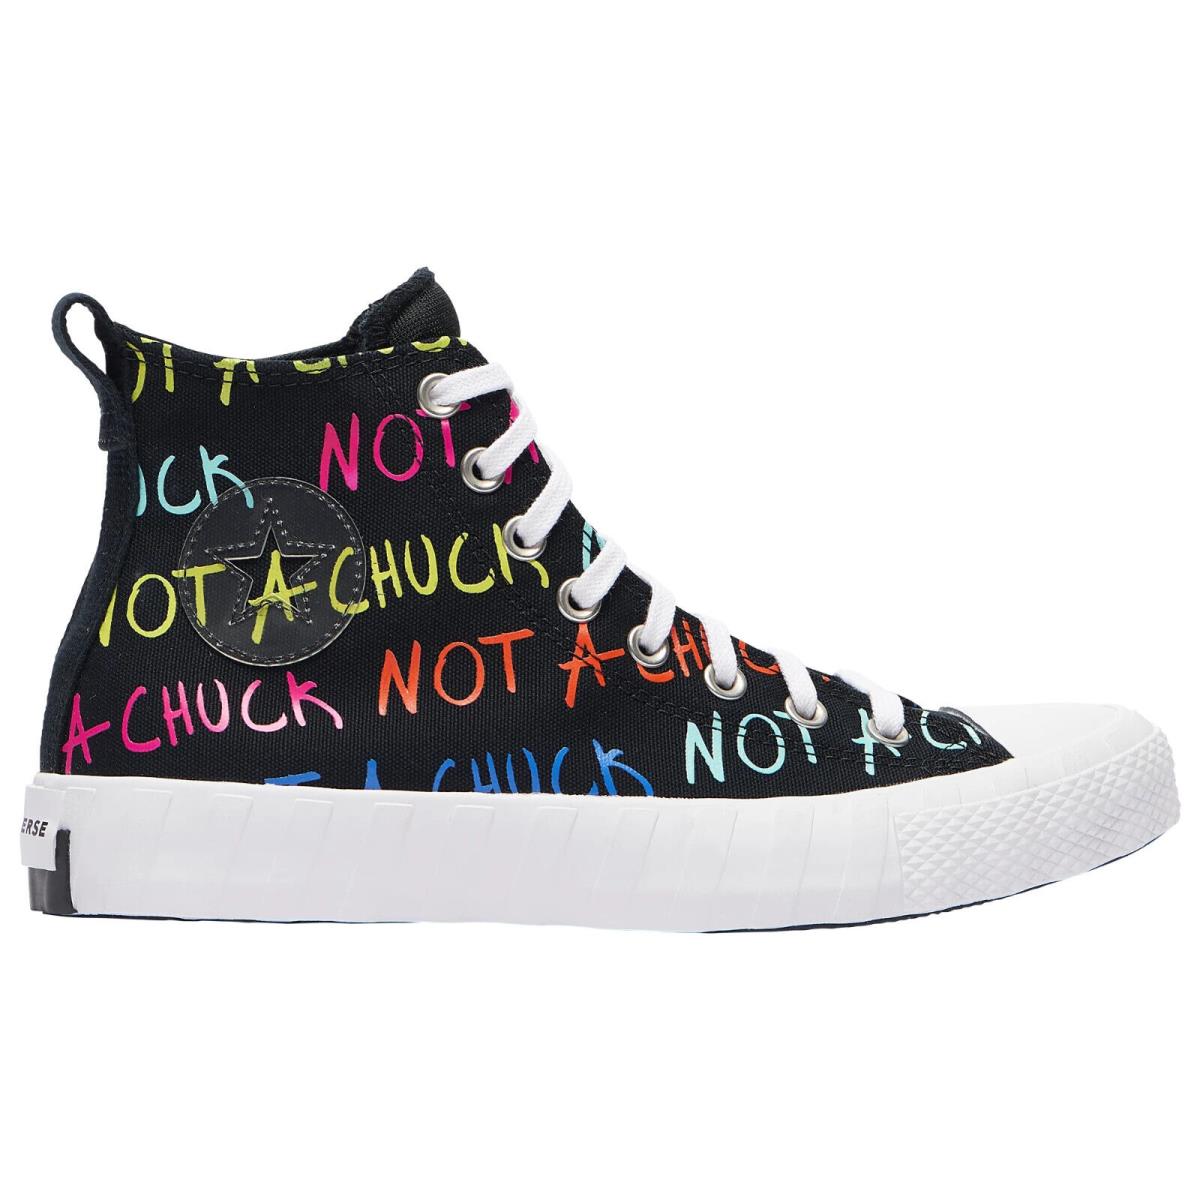 Converse Not A Chuck Sz 13/15 Hi-top 173165C Athletic Shoes